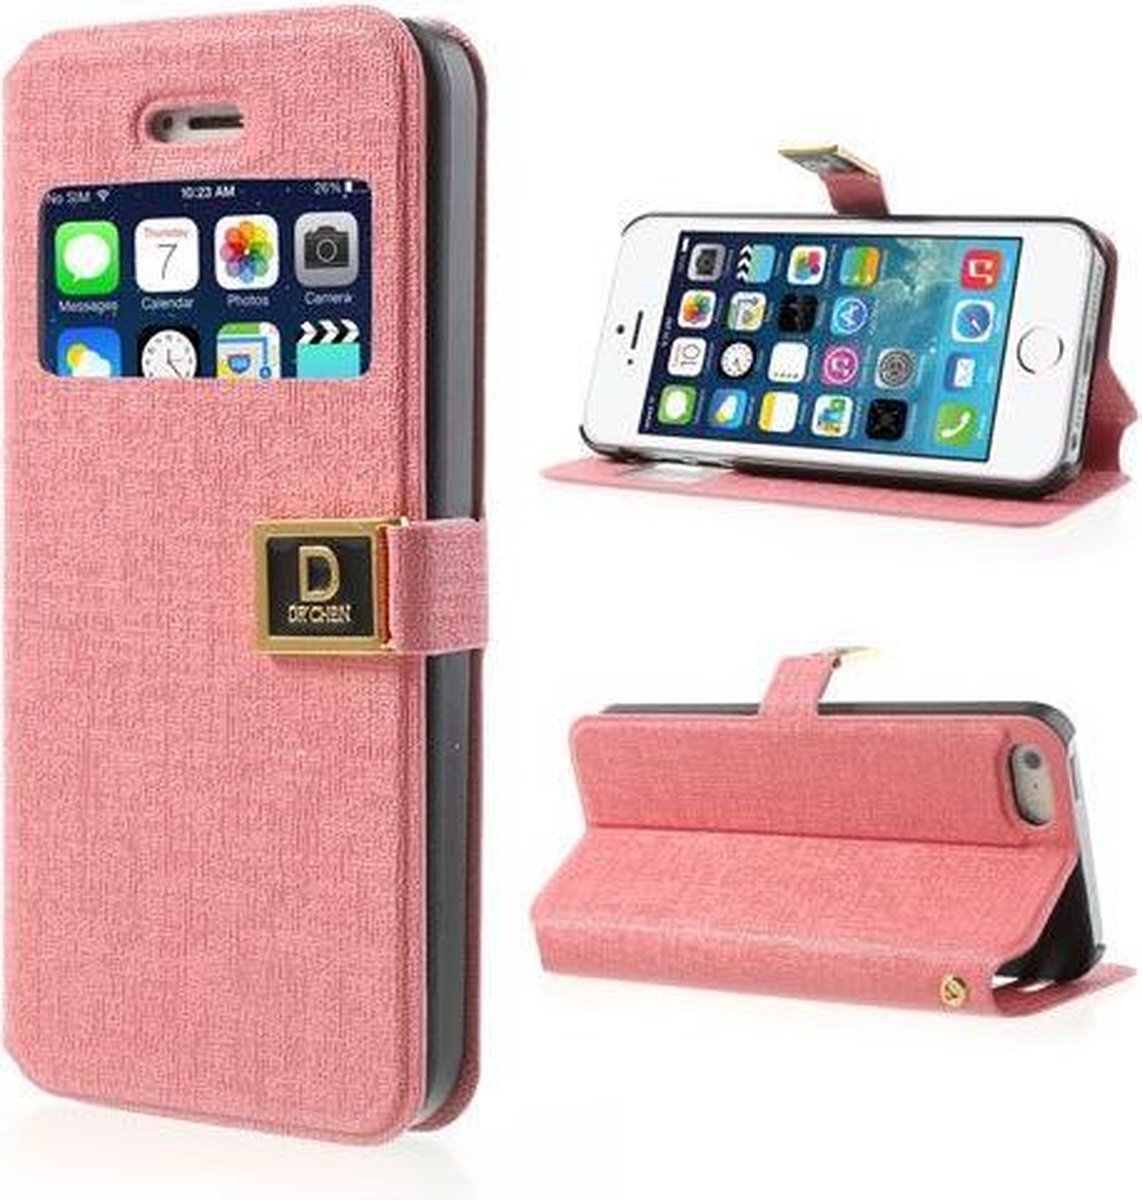 Kijkvenster case iphone 5 zacht roze